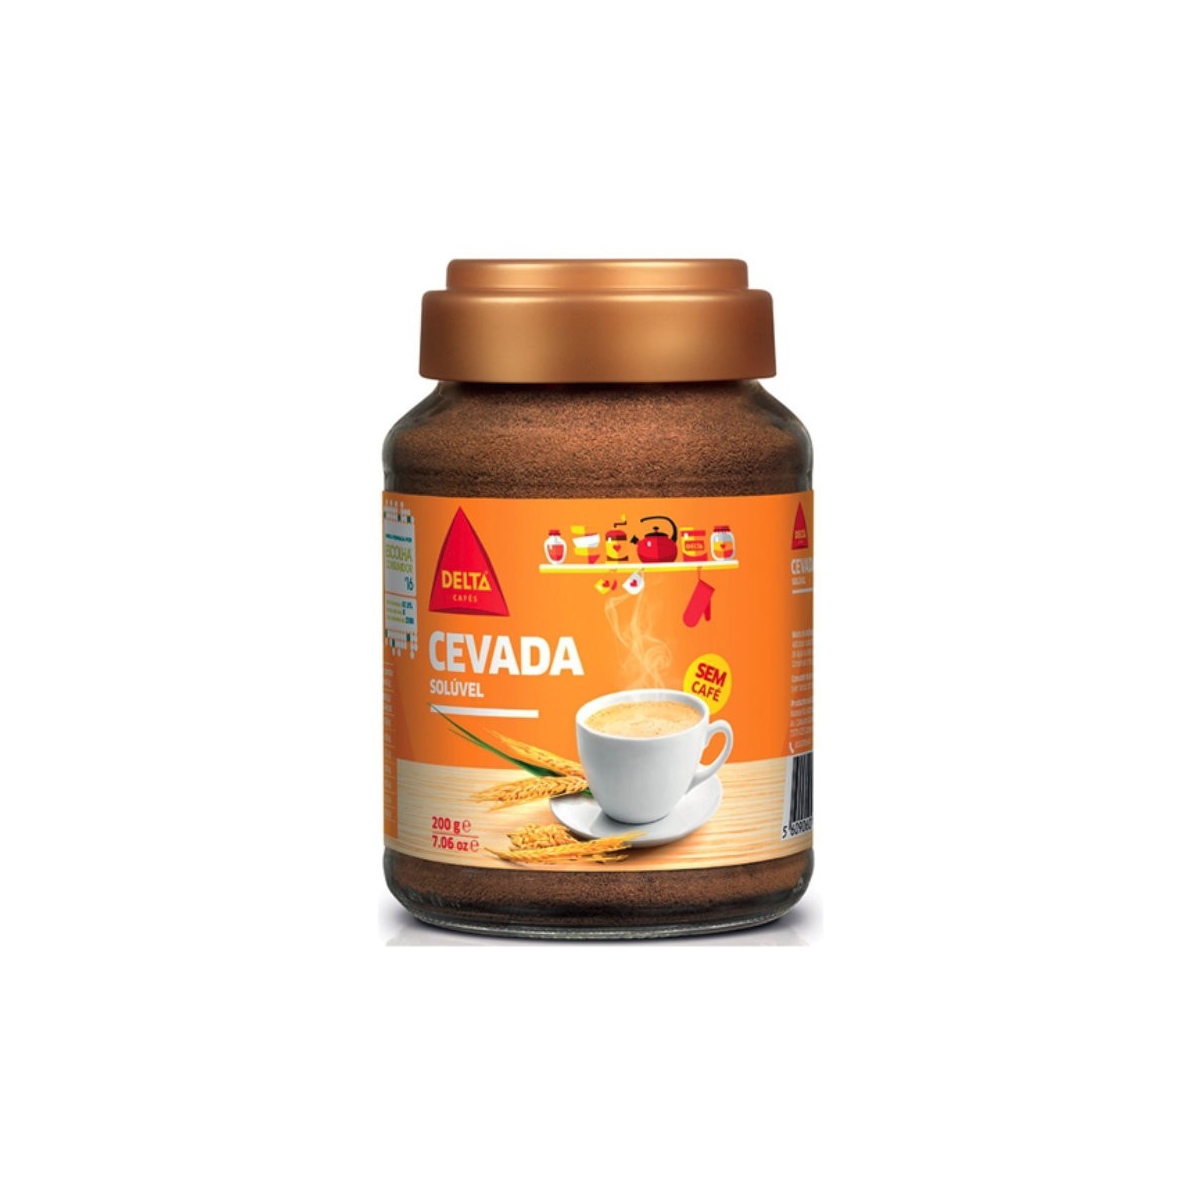 Delta cevada cebada soluble – orge soluble sans café – 200g